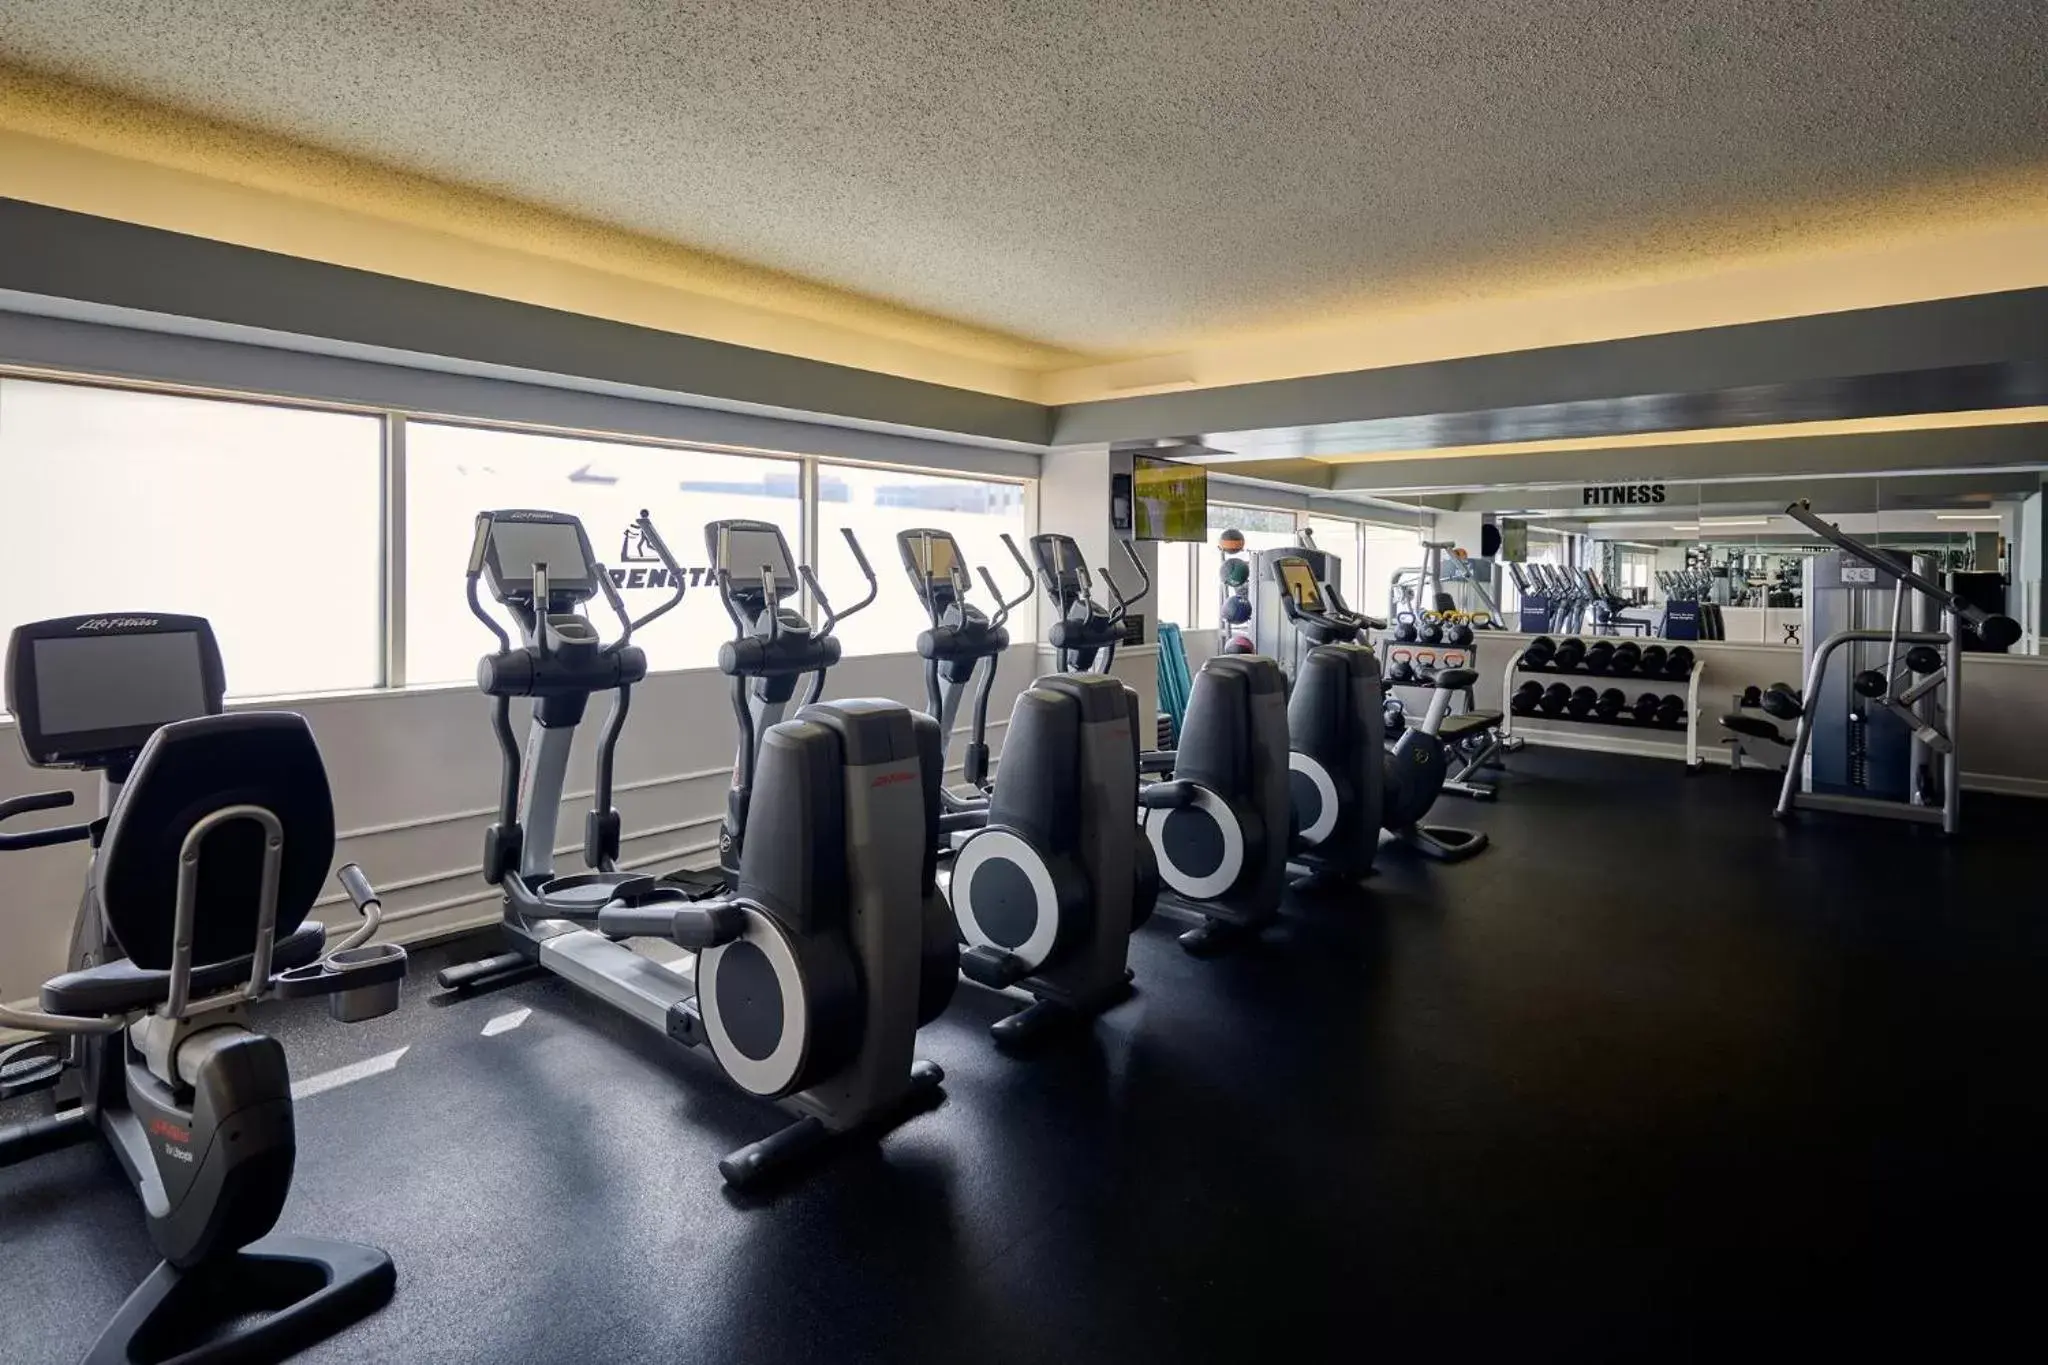 Fitness centre/facilities, Fitness Center/Facilities in Loews Vanderbilt Hotel